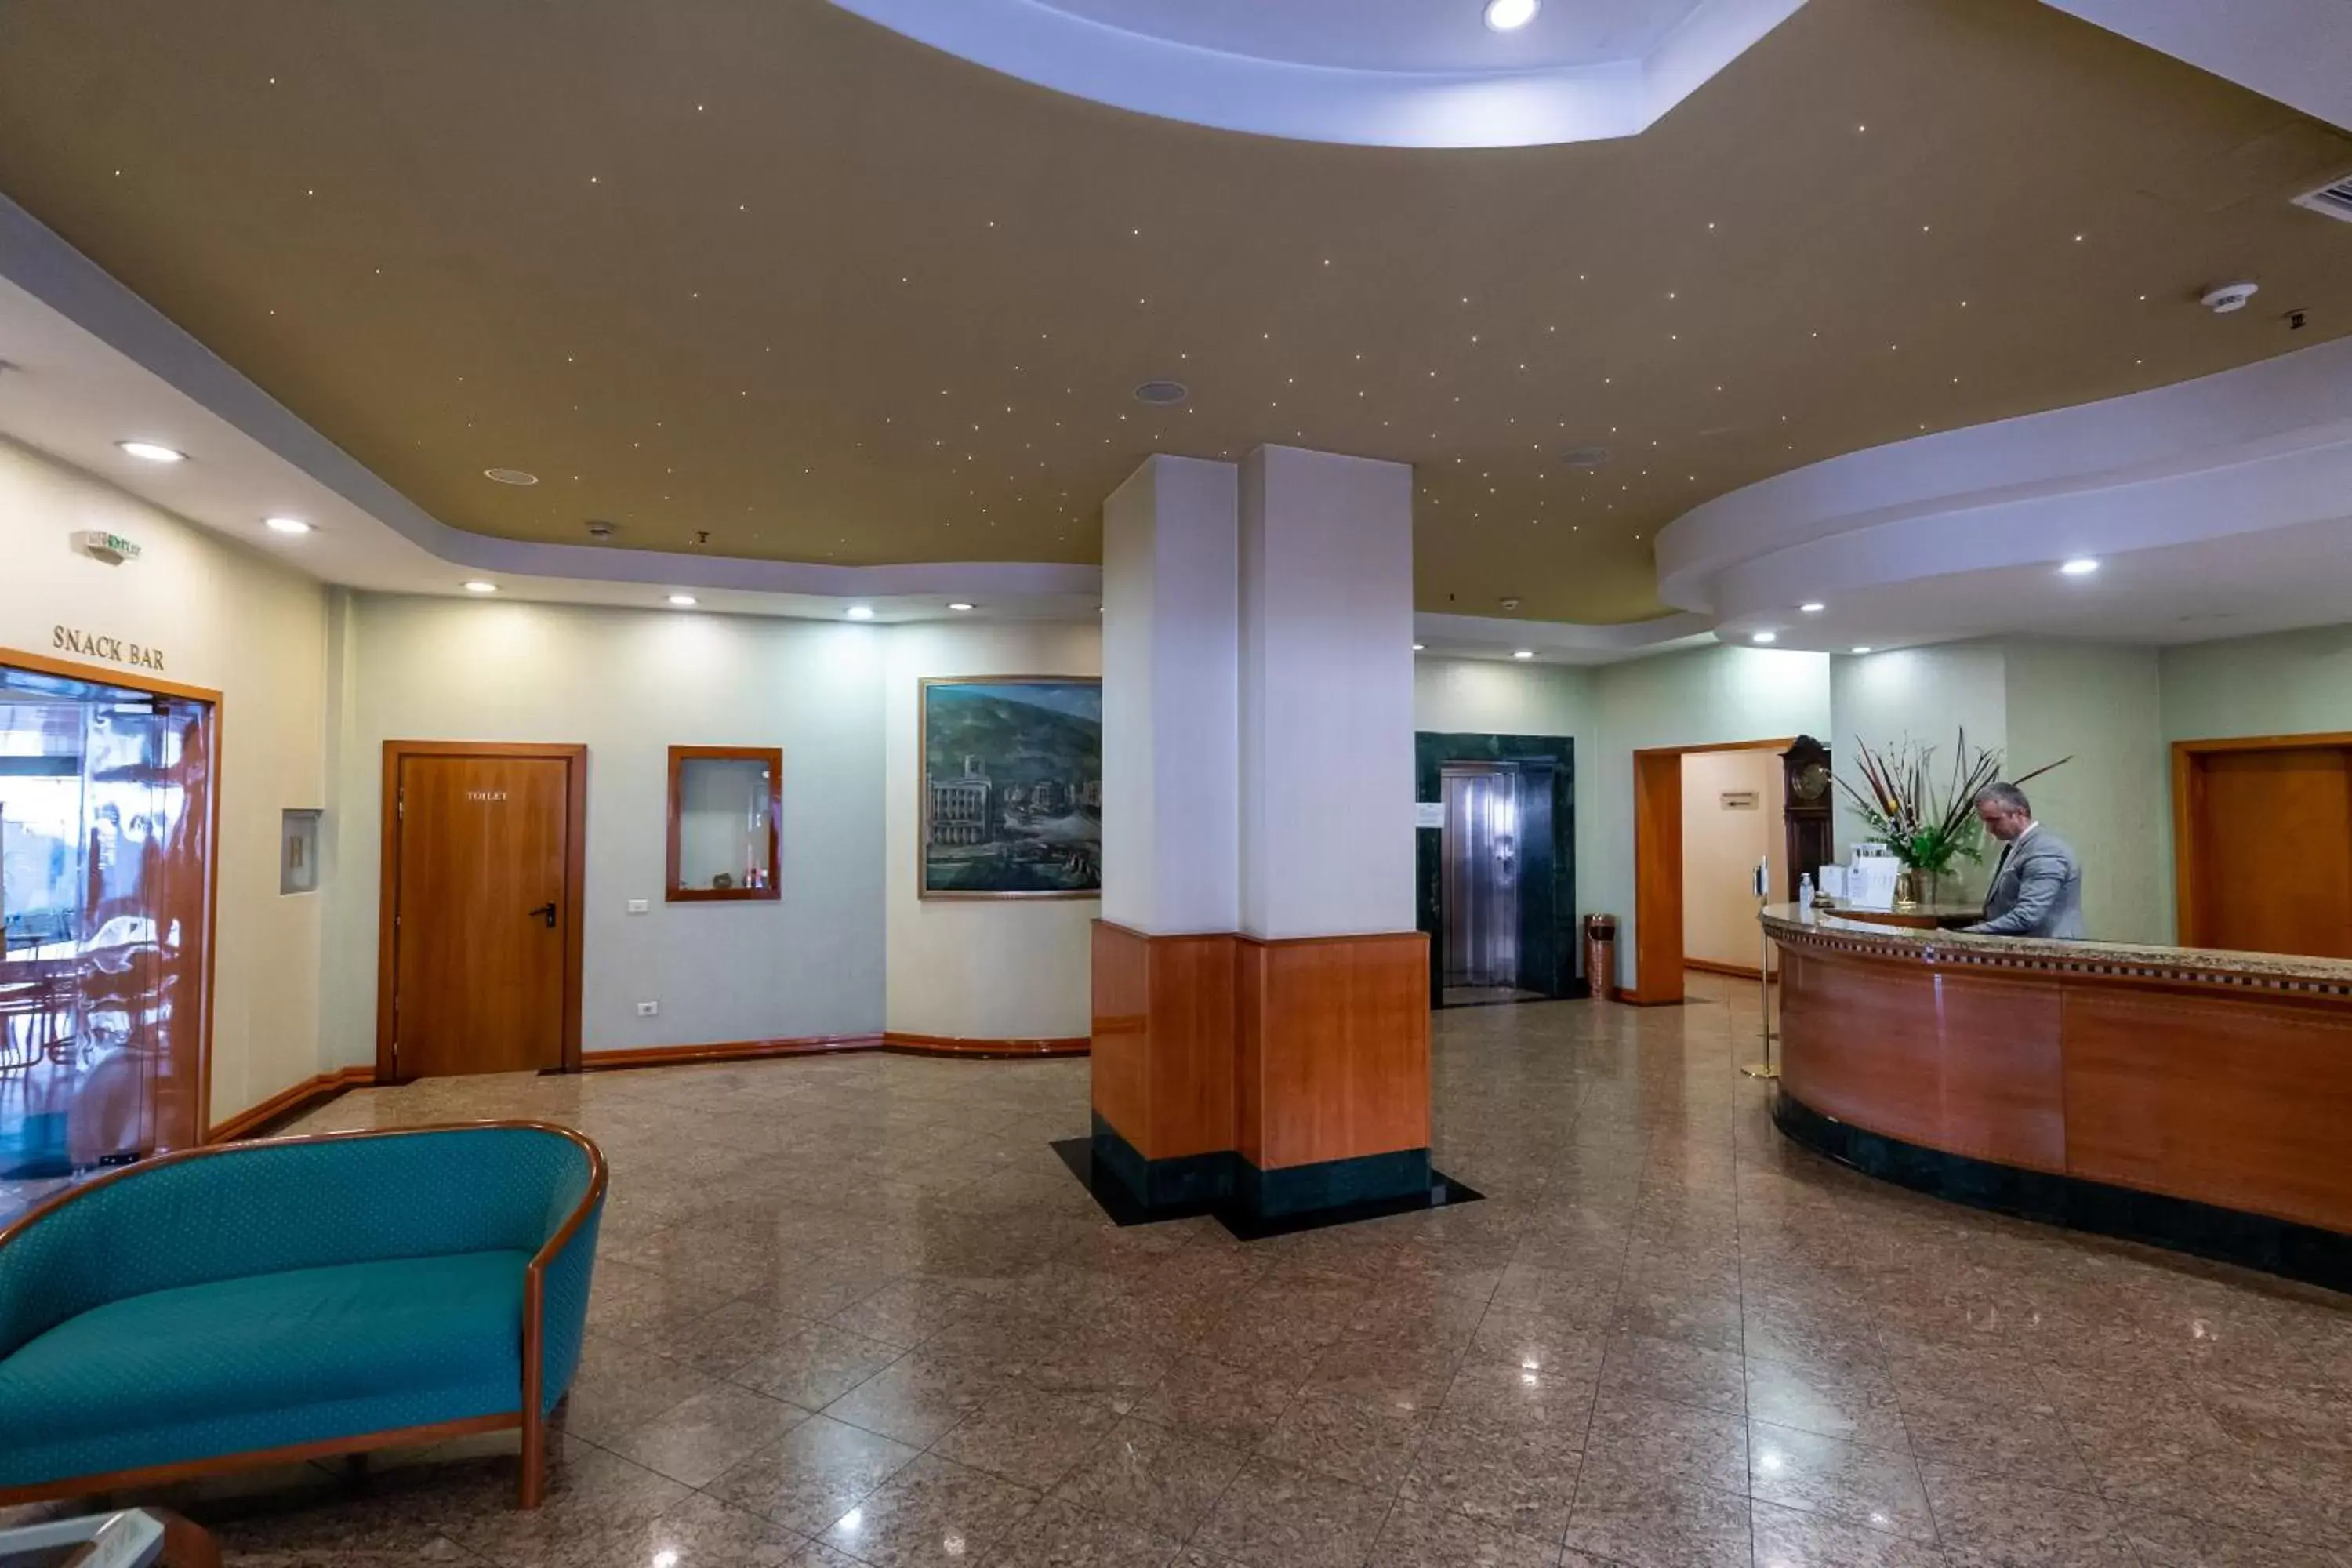 Lobby or reception, Lobby/Reception in Best Western Hotel Turist